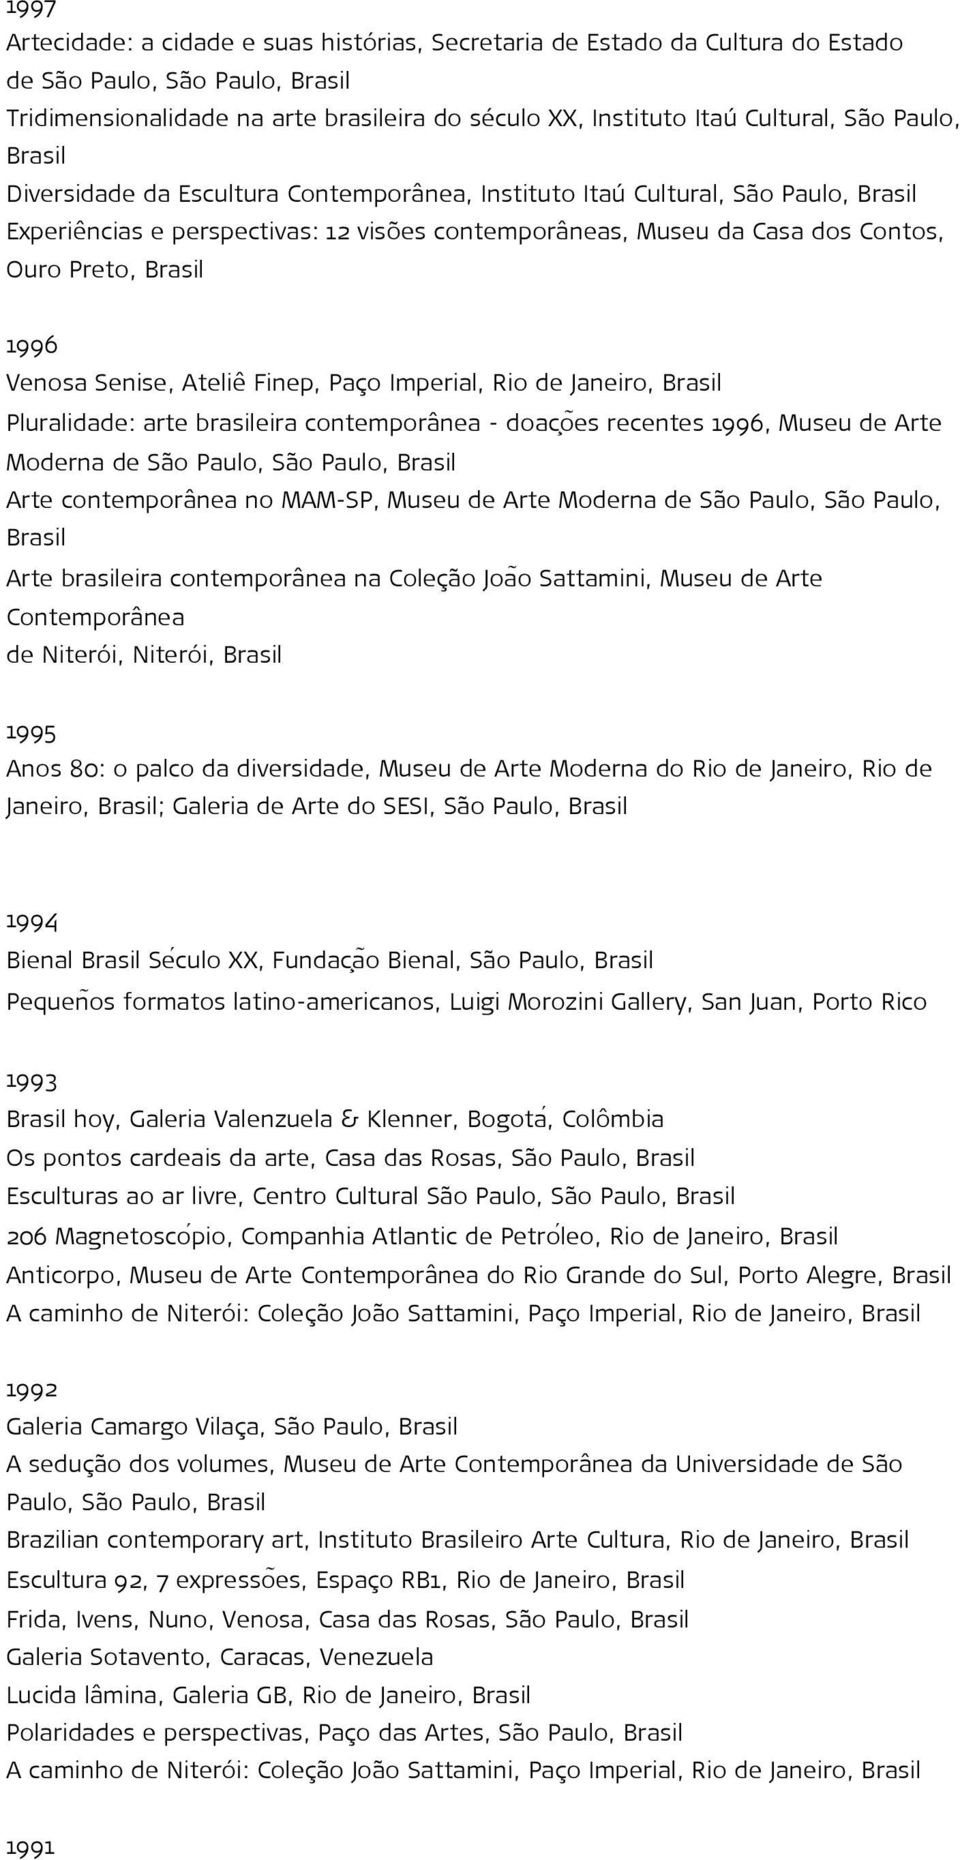 Finep, Paço Imperial, Rio de Janeiro, Pluralidade: arte brasileira contemporânea - doac oẽs recentes 1996, Museu de Arte Moderna de São Paulo, São Paulo, Arte contemporânea no MAM-SP, Museu de Arte